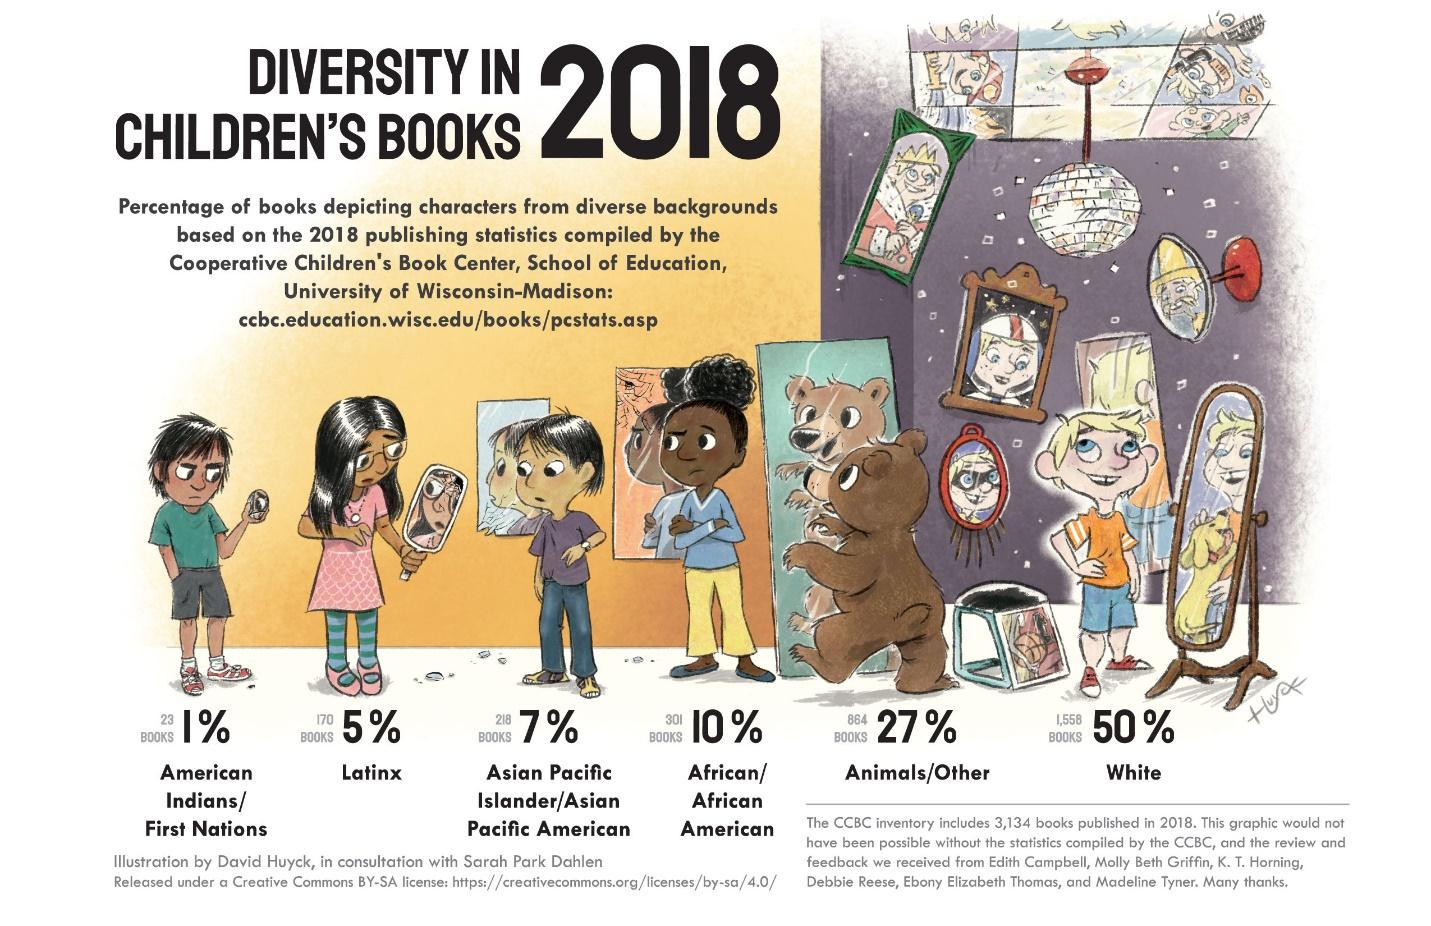 Un gráfico que muestra la diversidad en el libro infantil en 2018. Cinco niños, todos de diferentes orígenes étnicos, están mirando en espejos de tamaño propuestamente la cantidad de libros que presentan personajes de su mismo origen. Un oso también se mira en un espejo, mostrando que el 27% de los personajes son animales/otros. El 1% de los personajes son indios americanos/Primeras Naciones, 5% latinx, 7% asiático isleño del Pacífico/asiático Pacífico americano, 10% afroamericano, y 50% blanco.